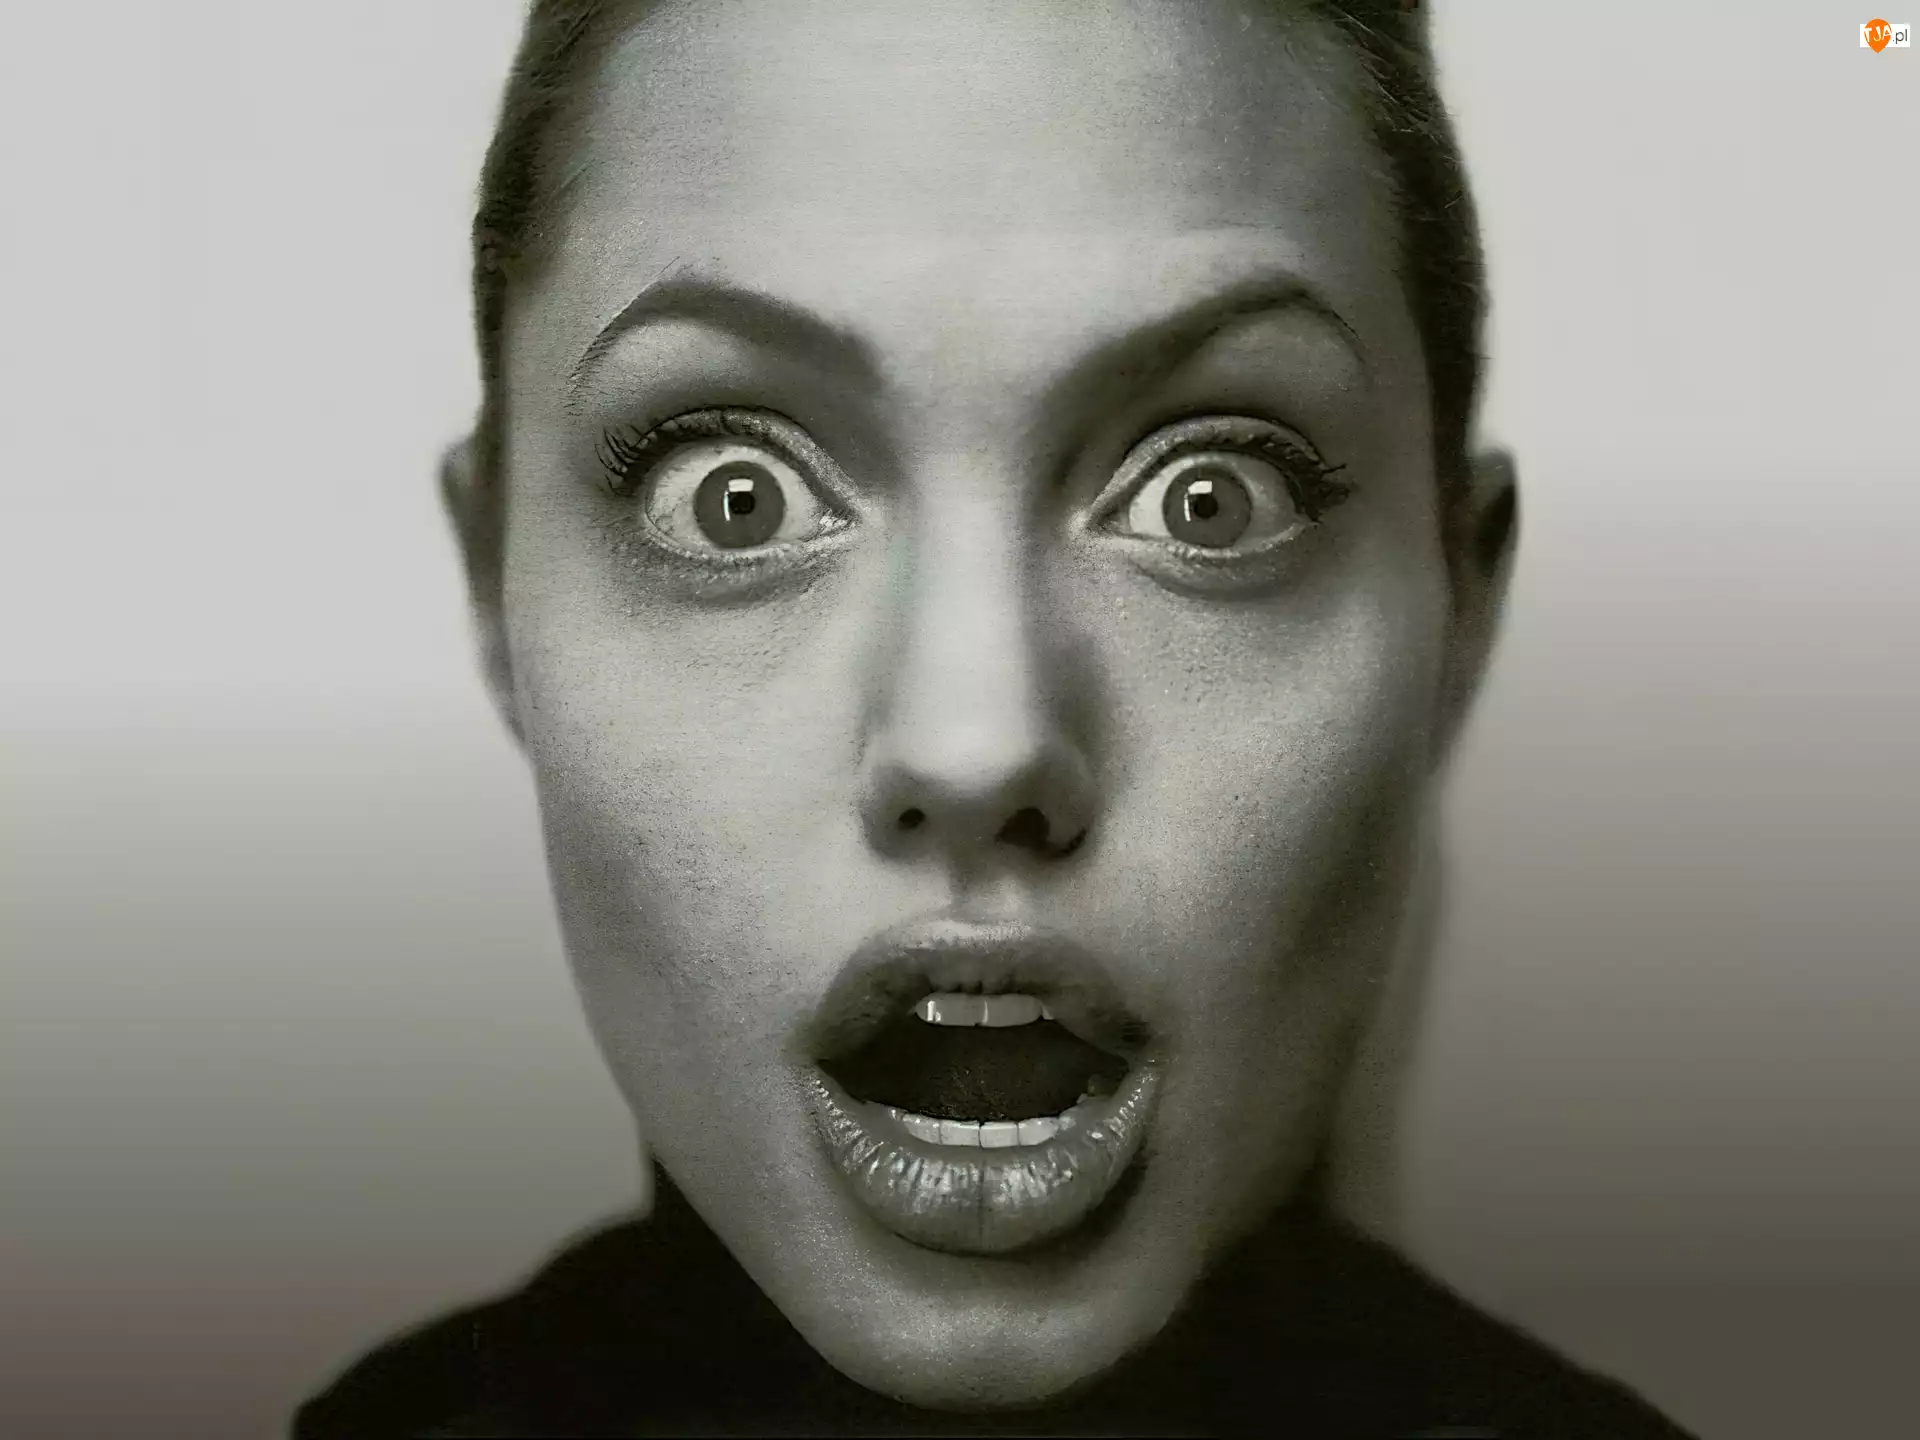 Angelina Jolie, duże oczy